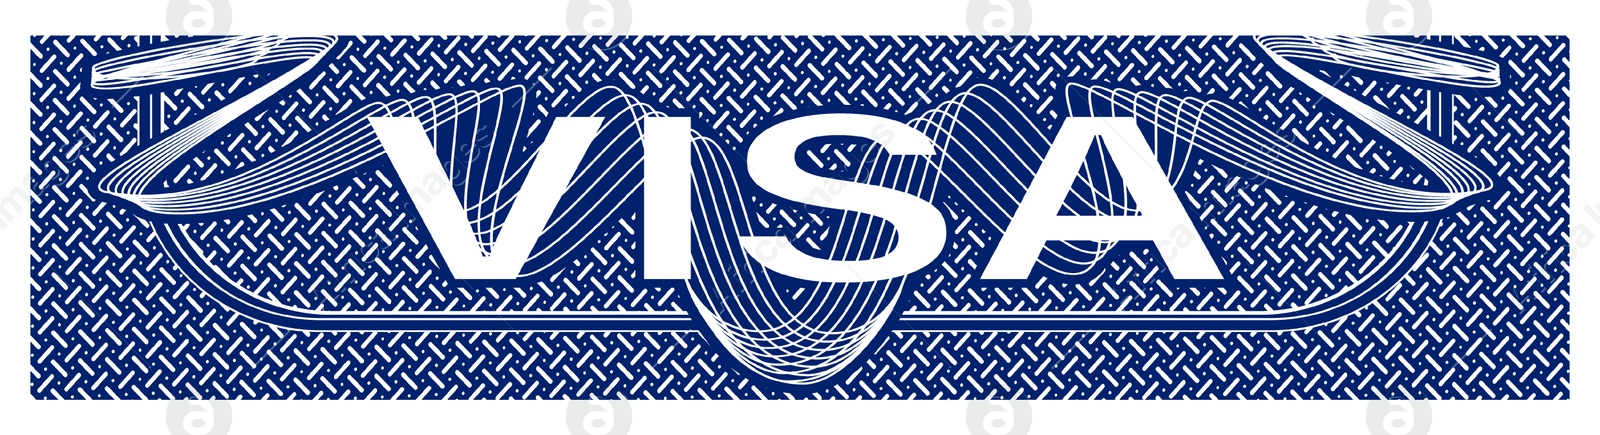 Illustration of Element of visa document, illustration. Banner design